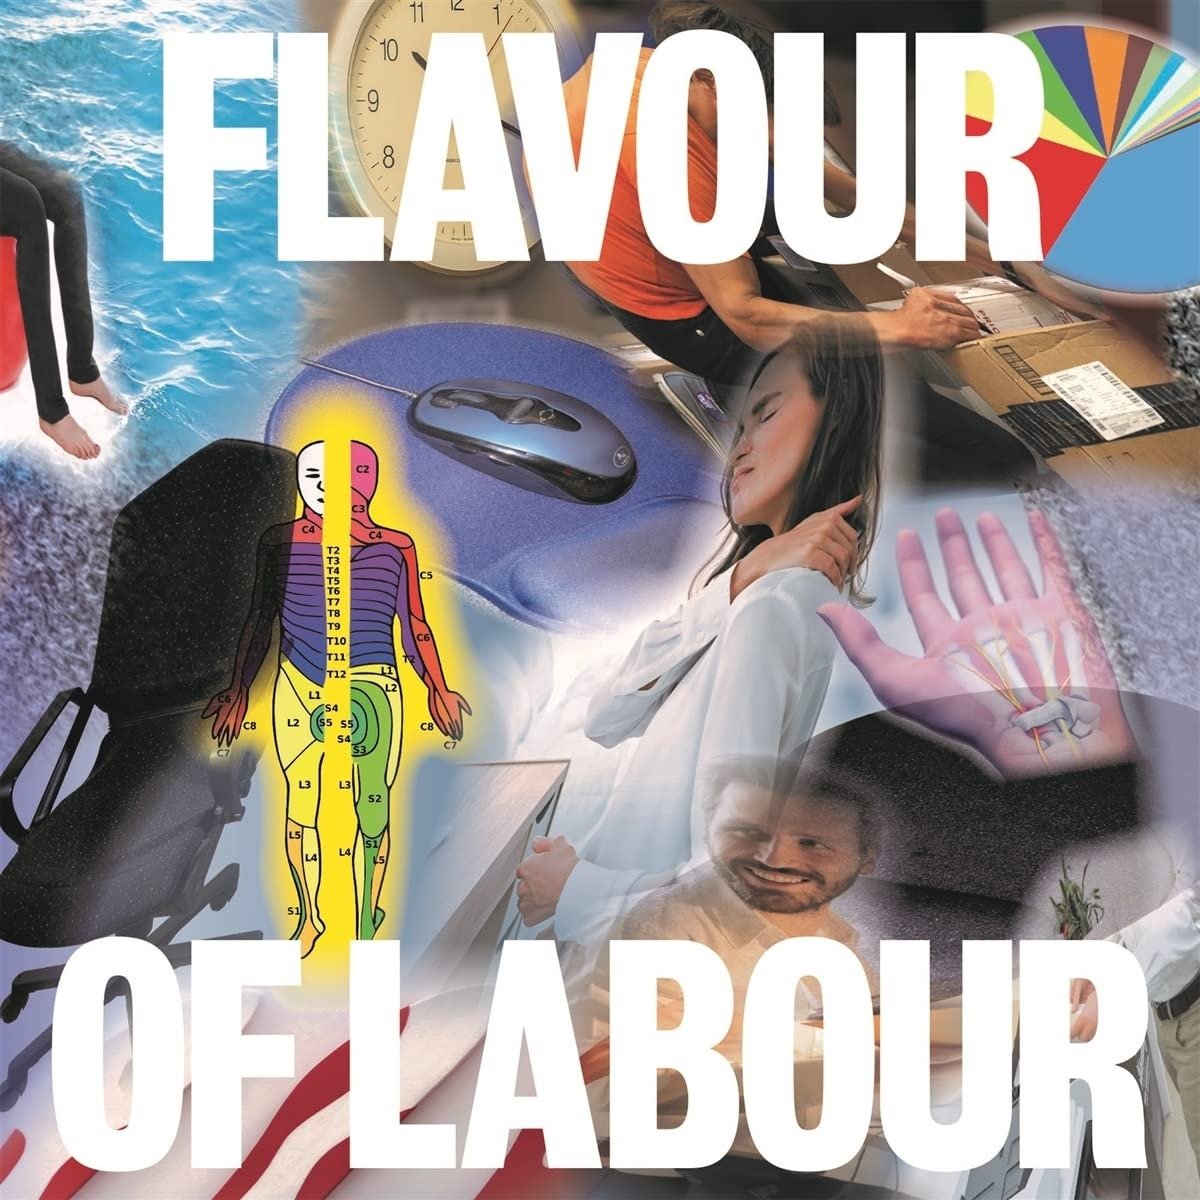 CD Shop - PUBLIC BODY FLAVOUR OF LABOUR